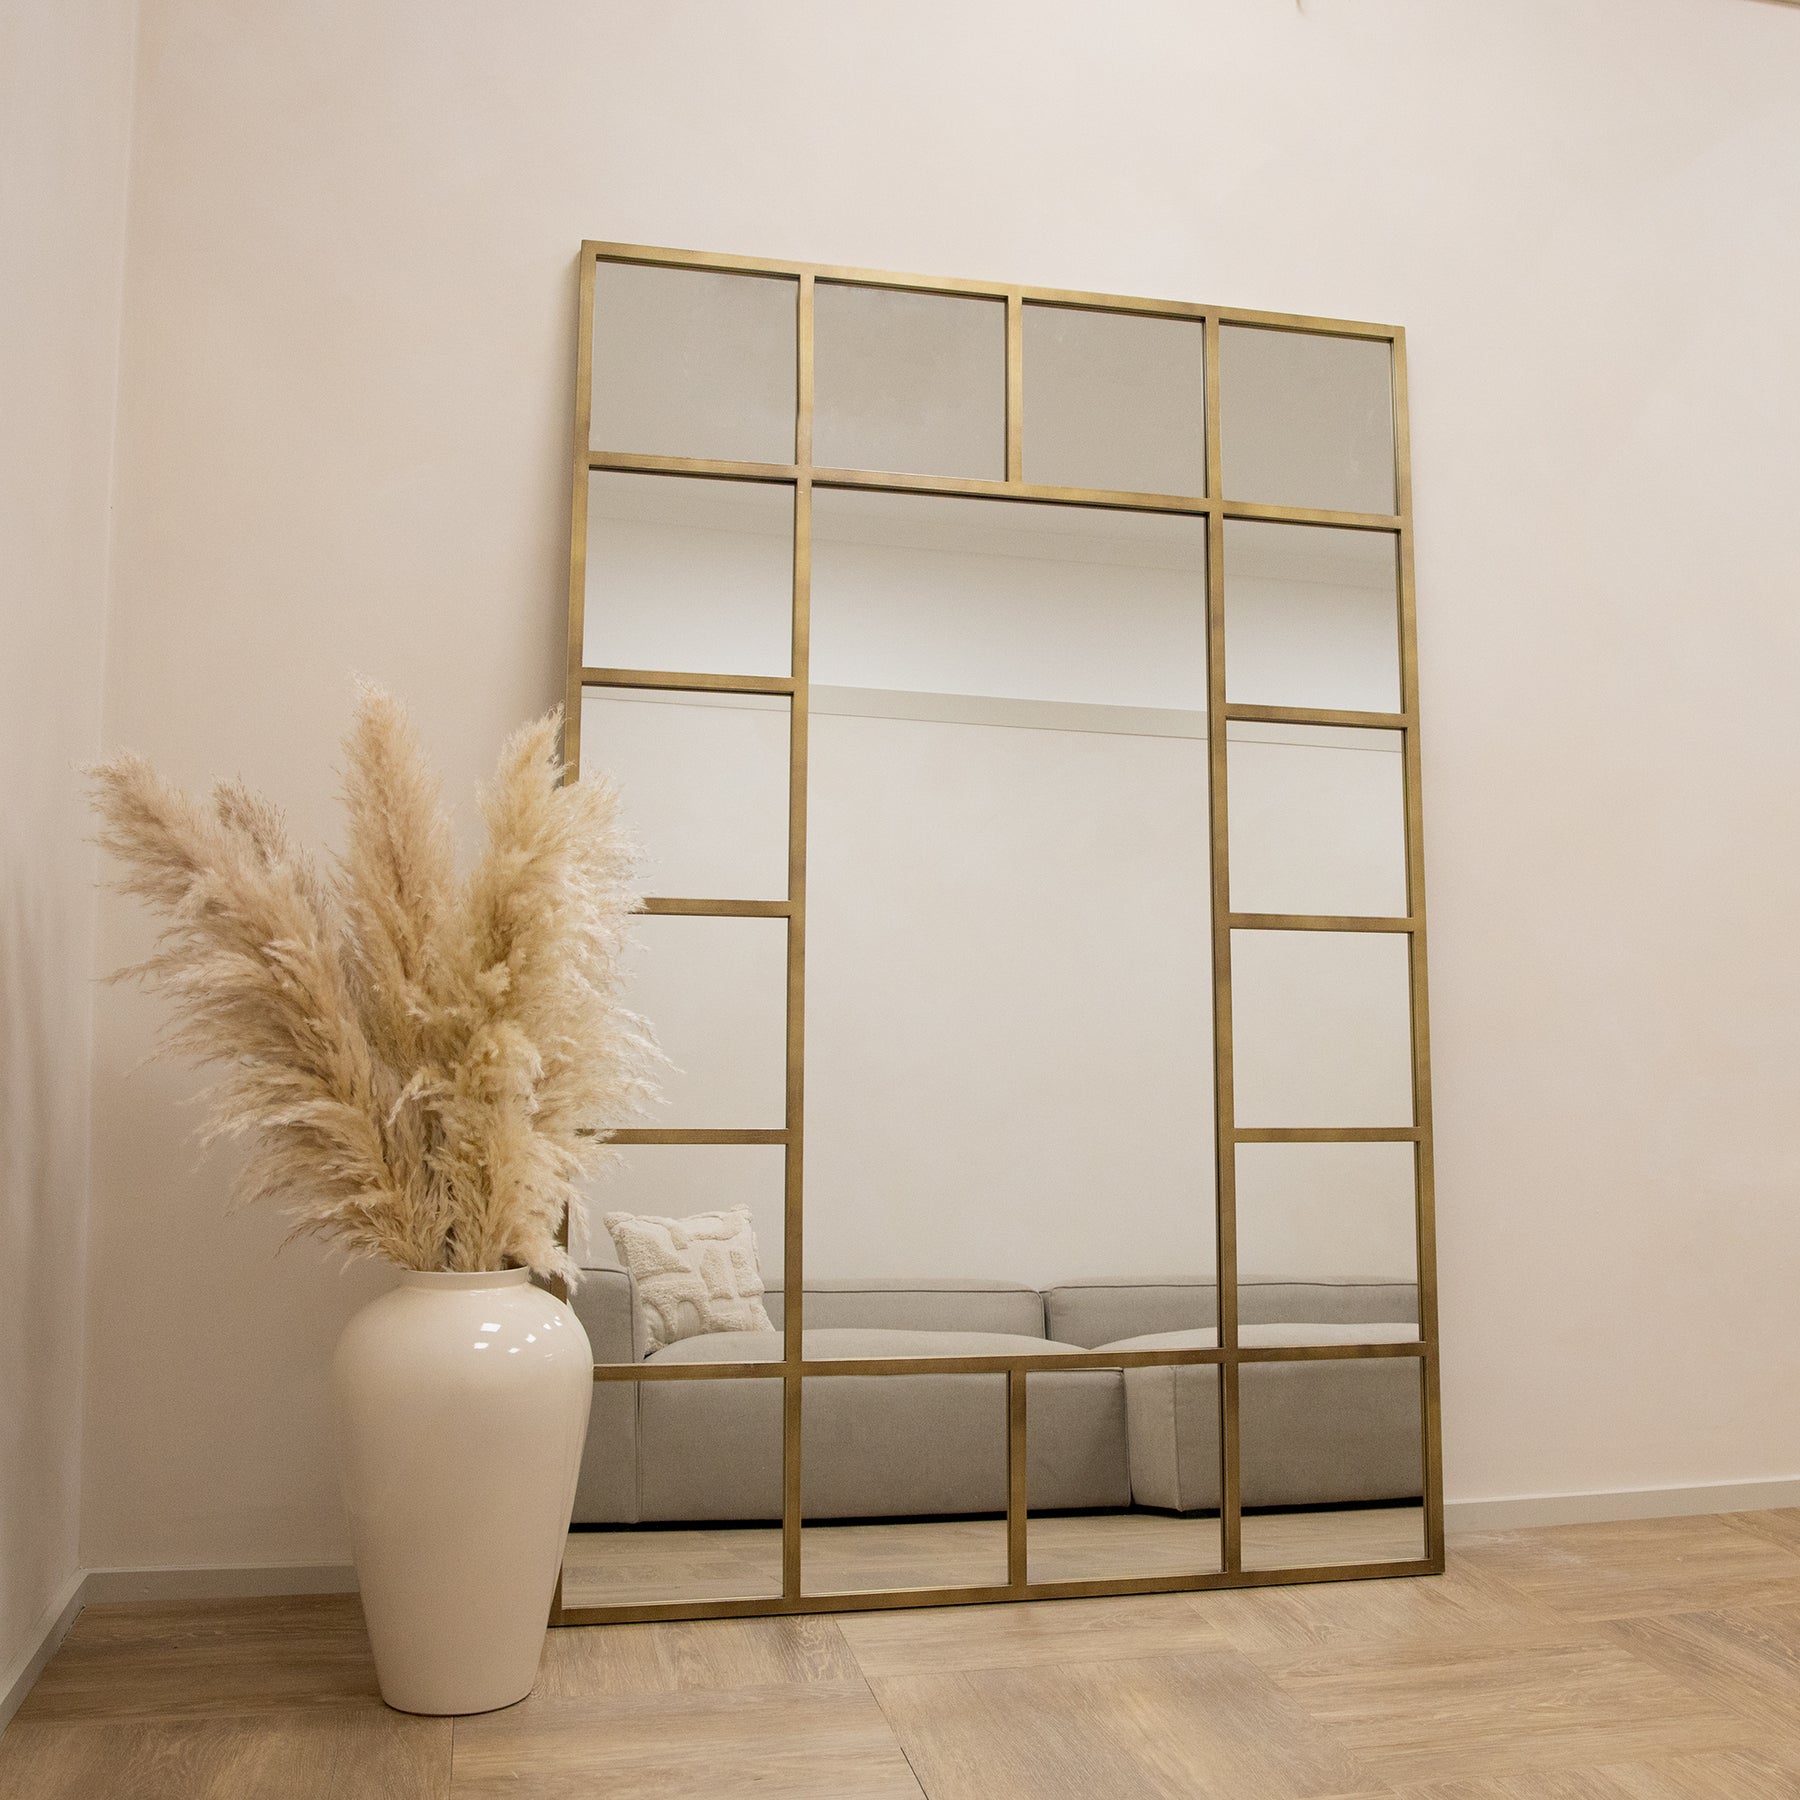 Gold industrial full length metal window mirror beside vase